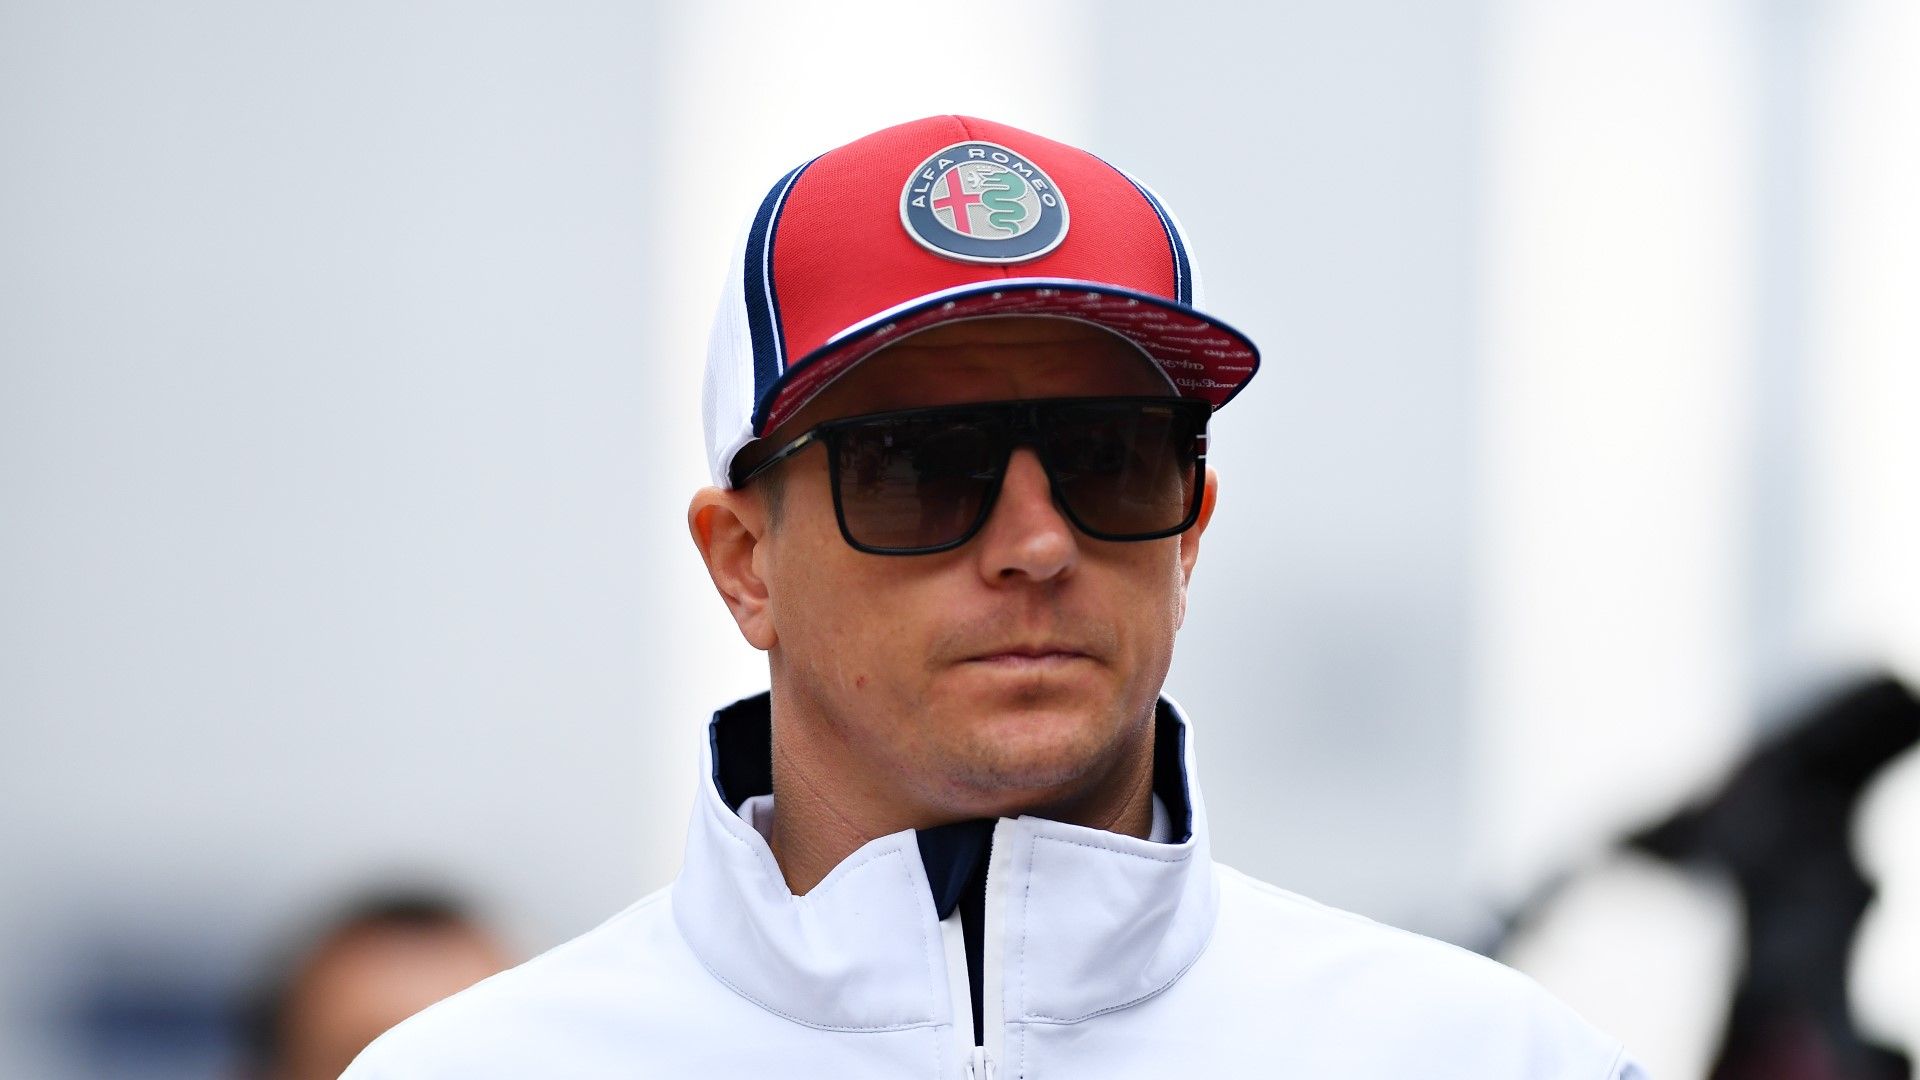 Райконен ще стане №1 в историята на Формула 1, но не му пука особено